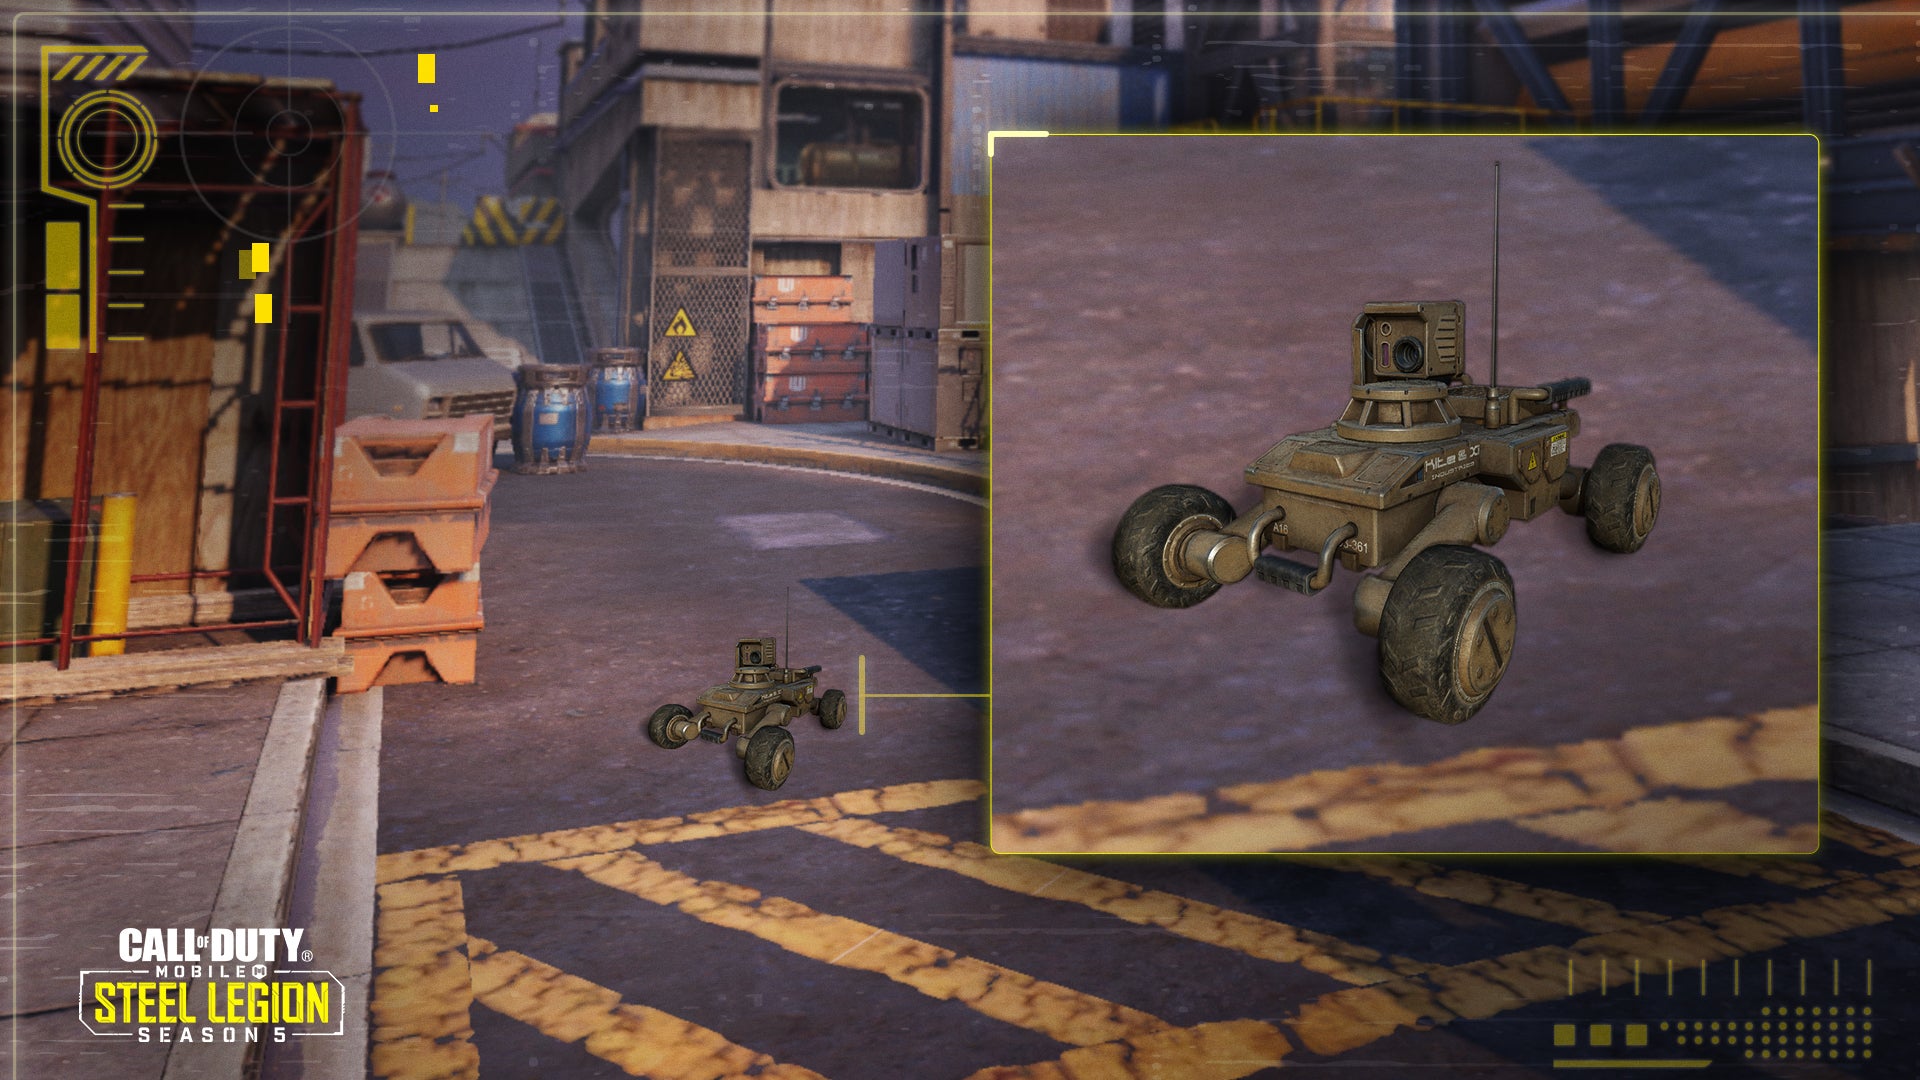 الإصدار 1.0.11 من "Call of Duty: Mobile" متاح الآن بشكل مباشر لتقديم الدعم للموسم التالي "Steel Legion" والخرائط الجديدة والموسم الجديد المصنف والمزيد 1